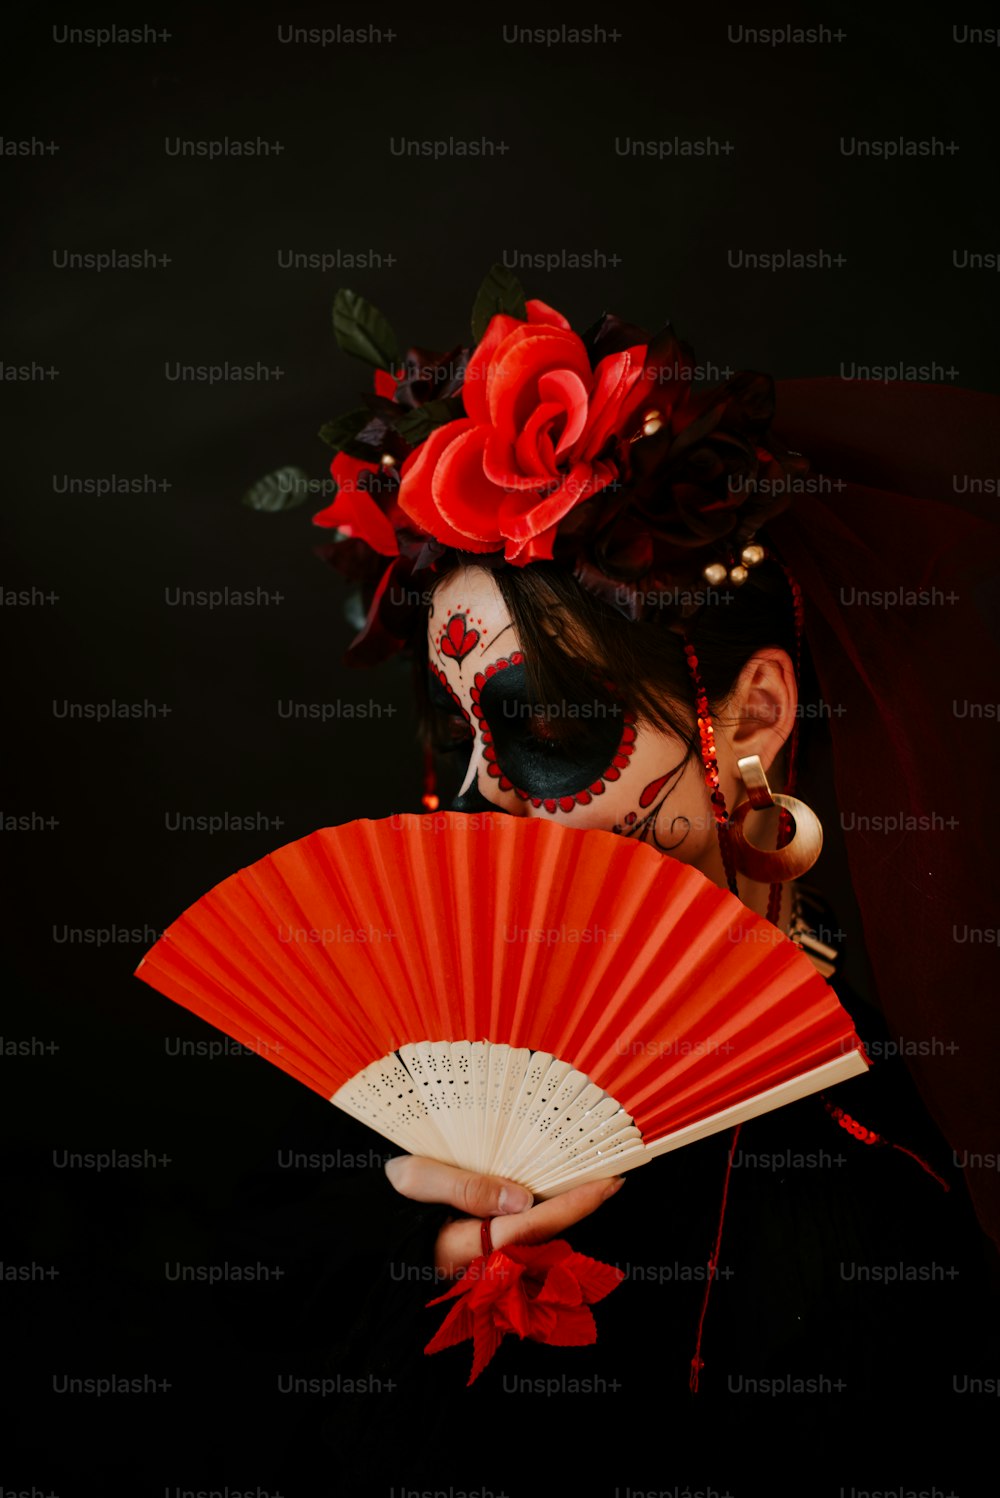 eine Frau mit einer roten Blume im Haar, die einen roten Fächer hält